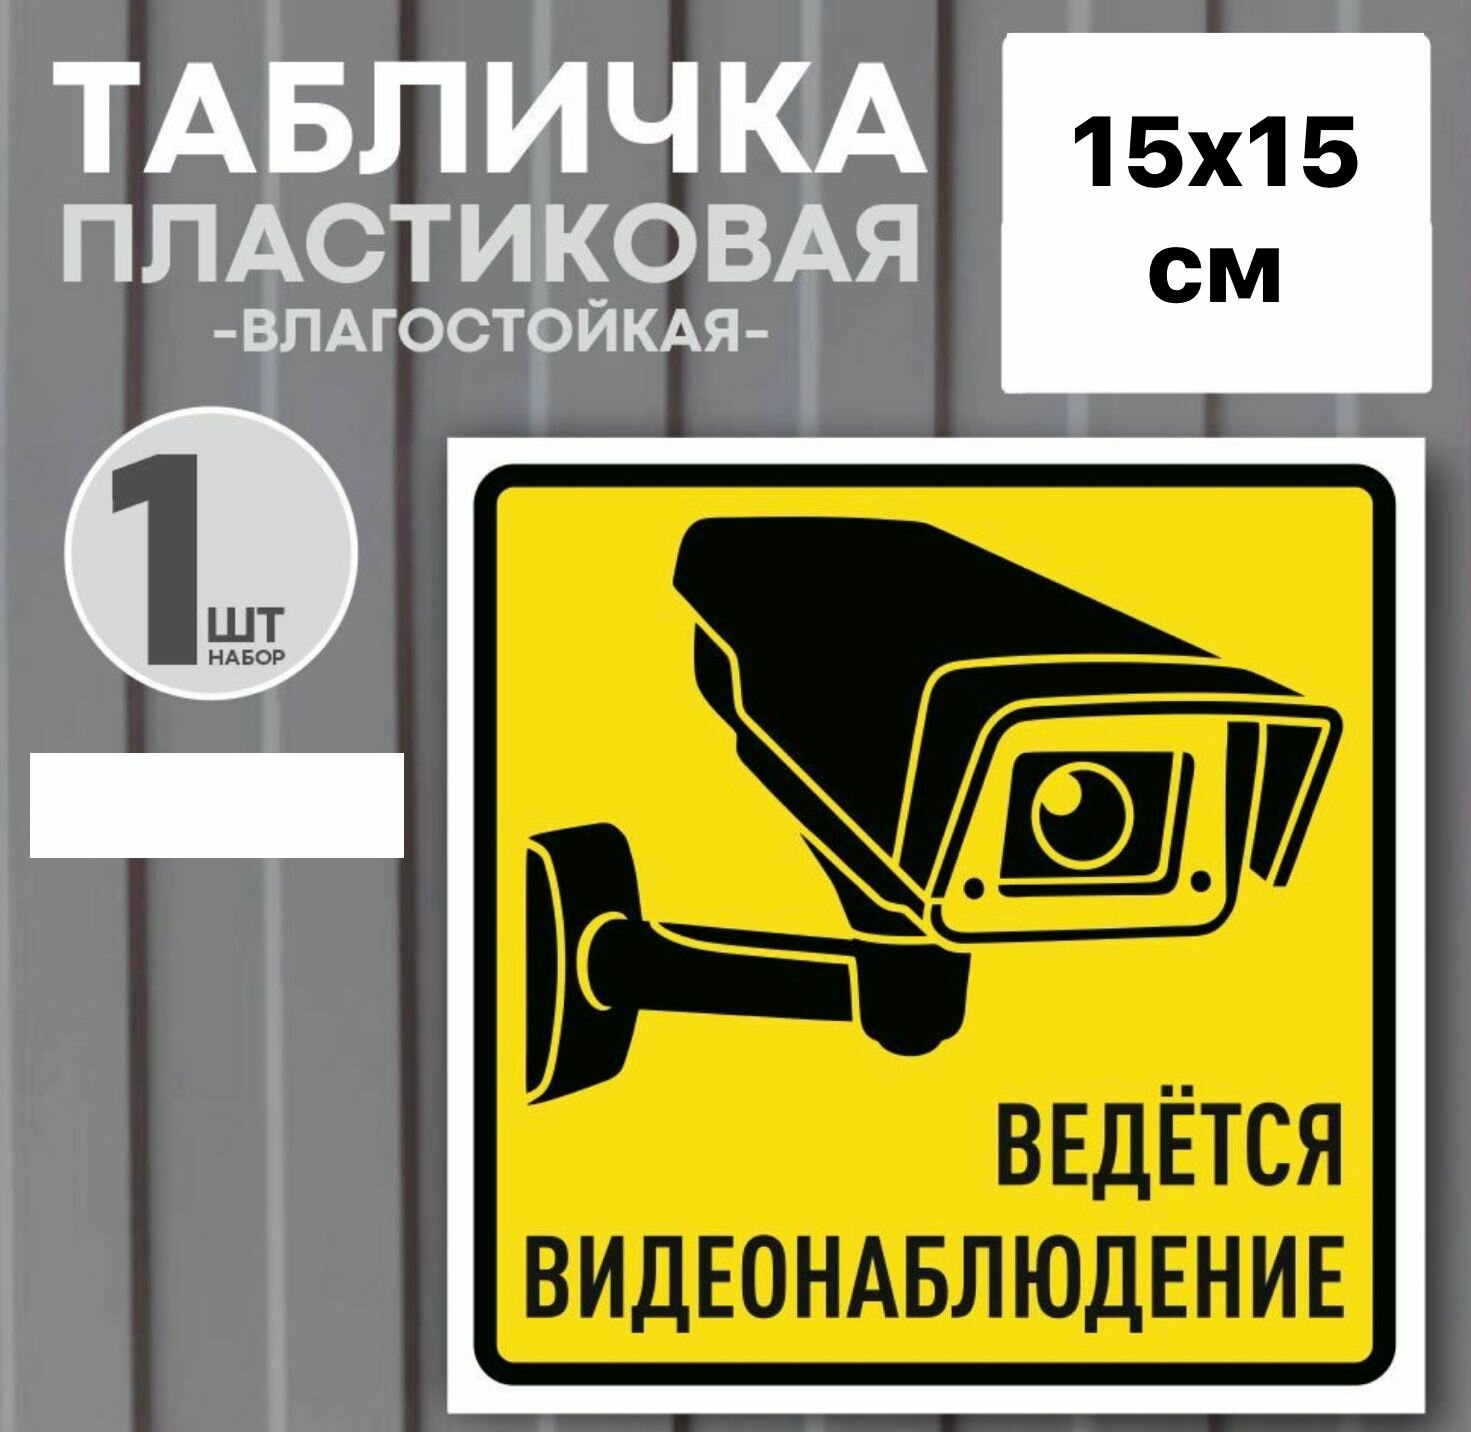 Табличка "Ведется видеонаблюдение", 15х15 см